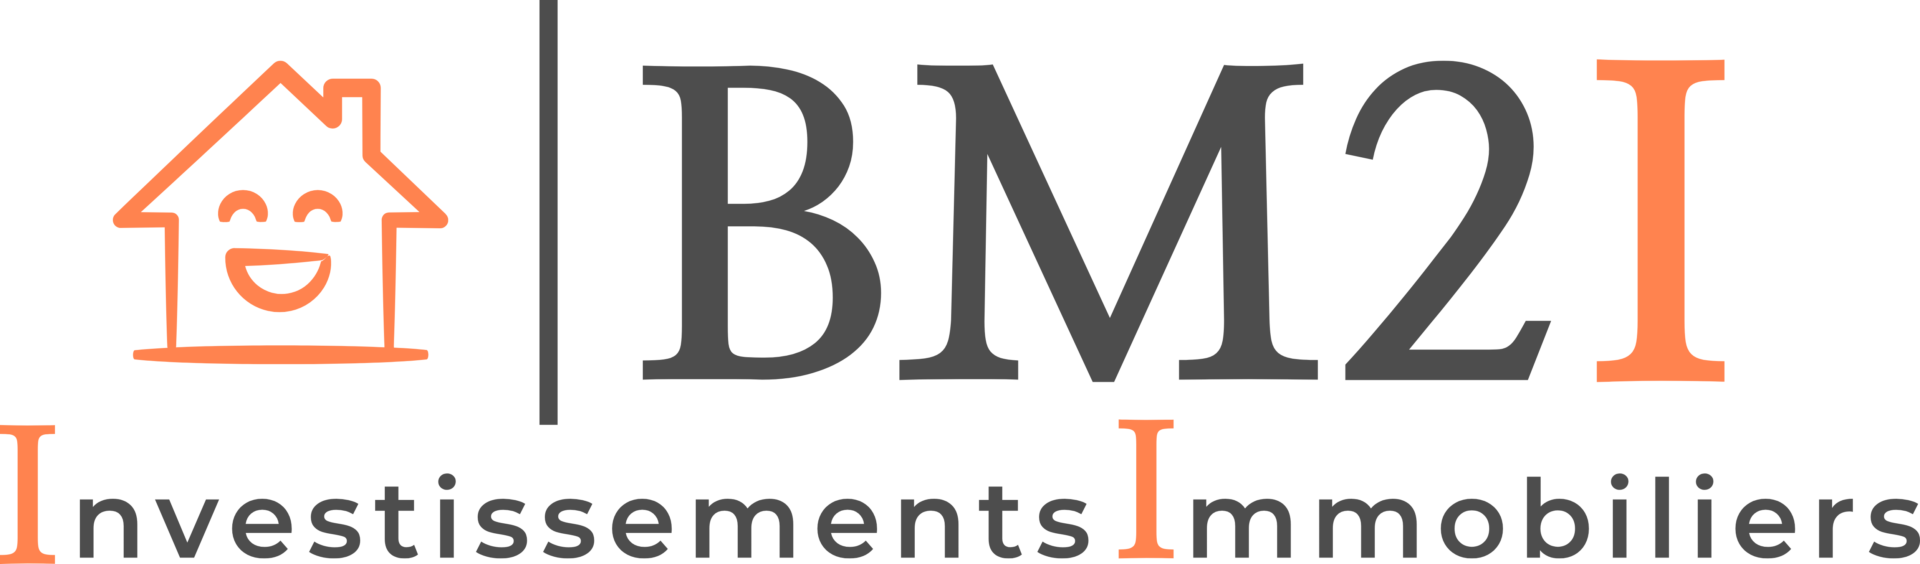 logo BM21 original